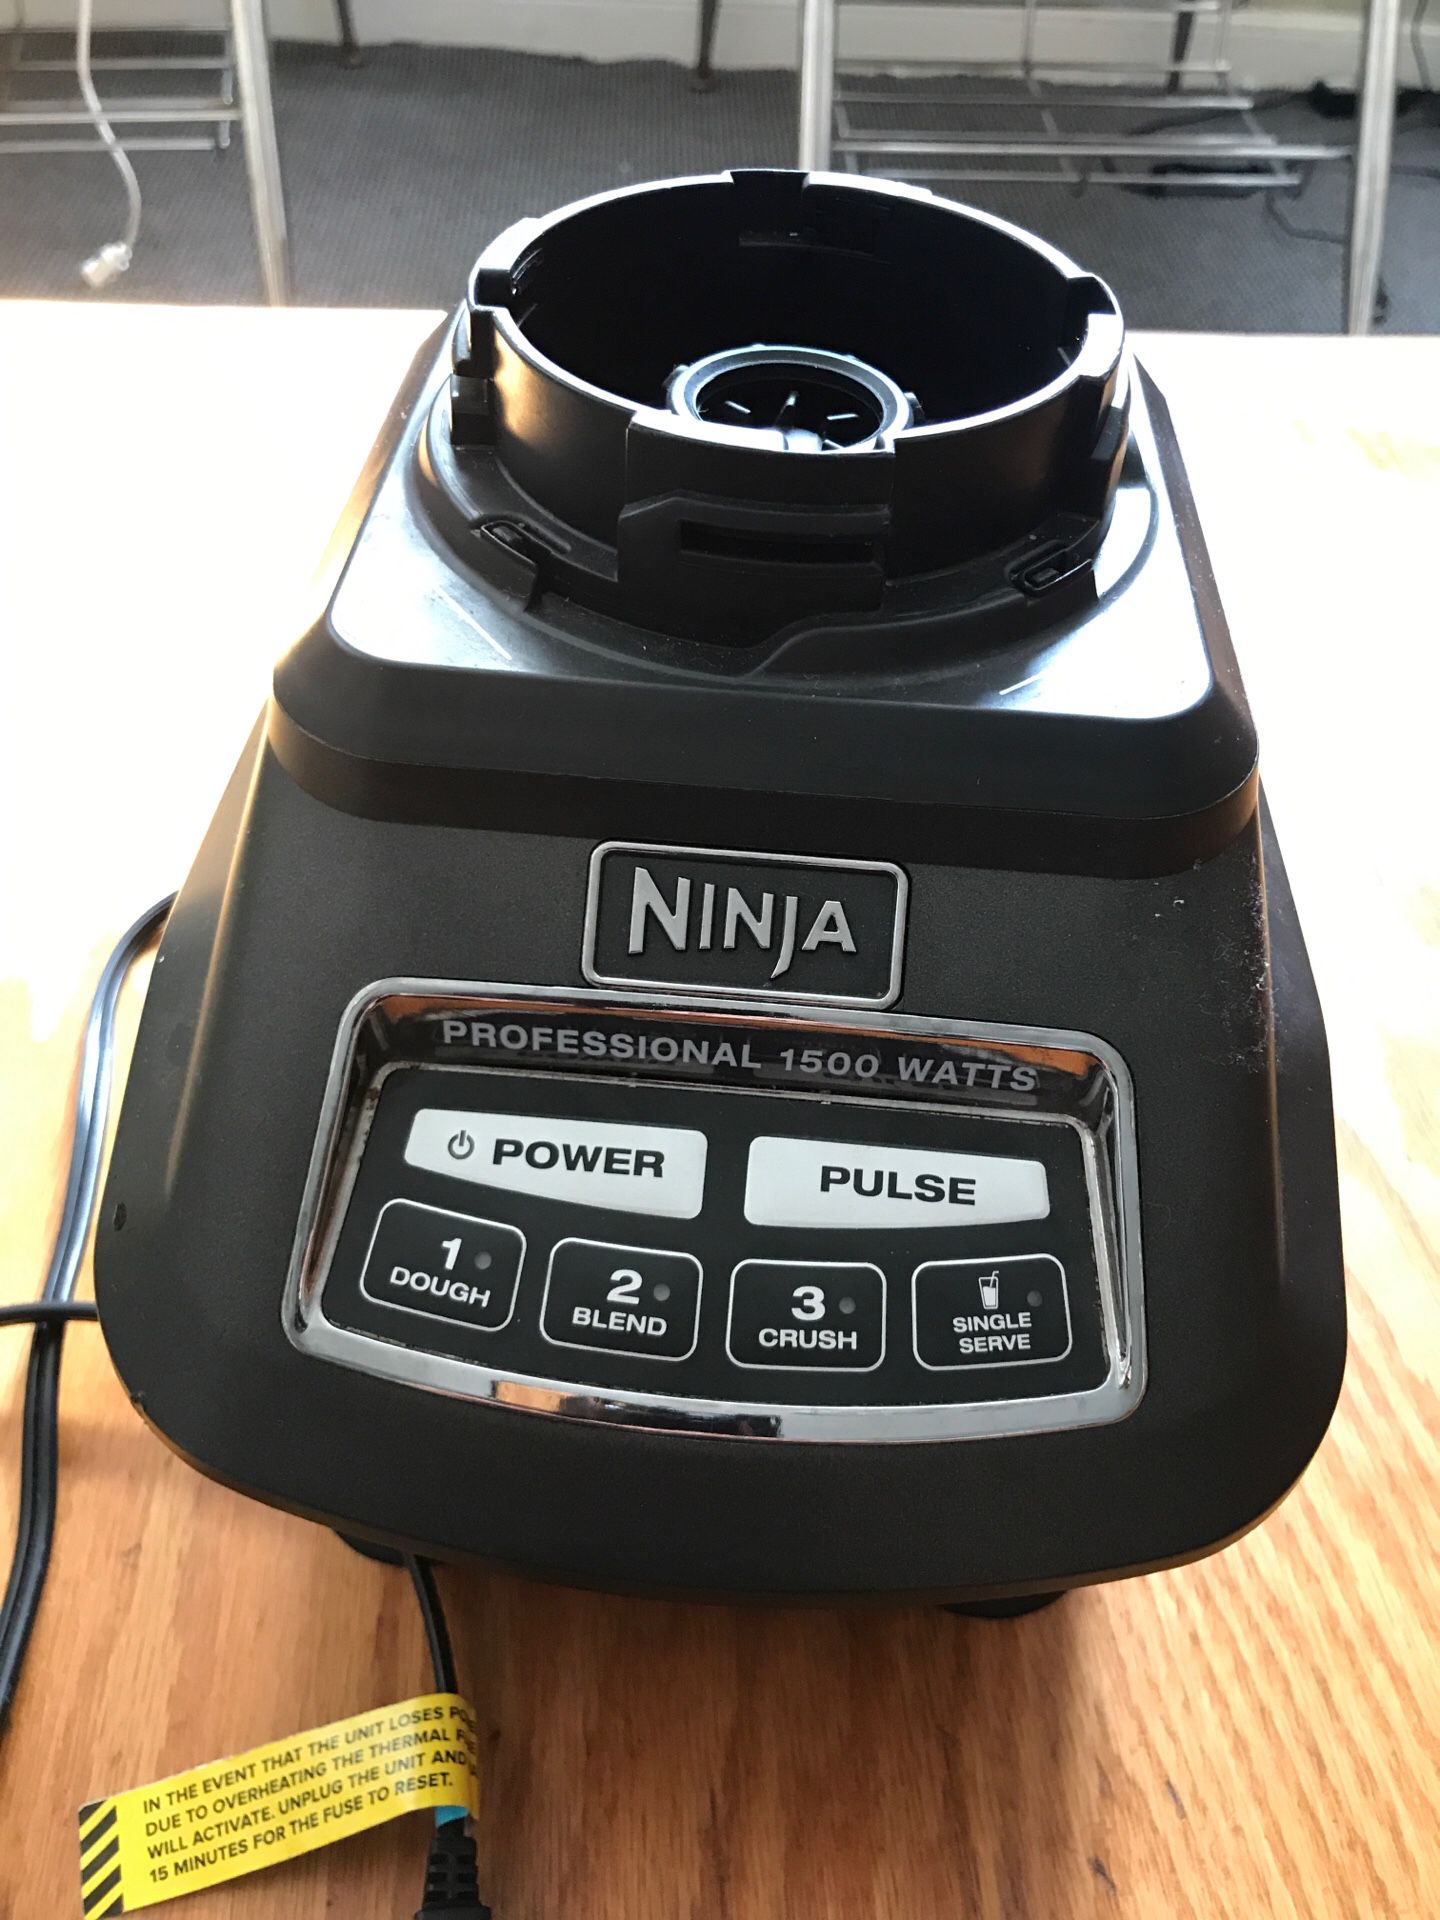 Ninja Professional 1500 Watt blender (base only)